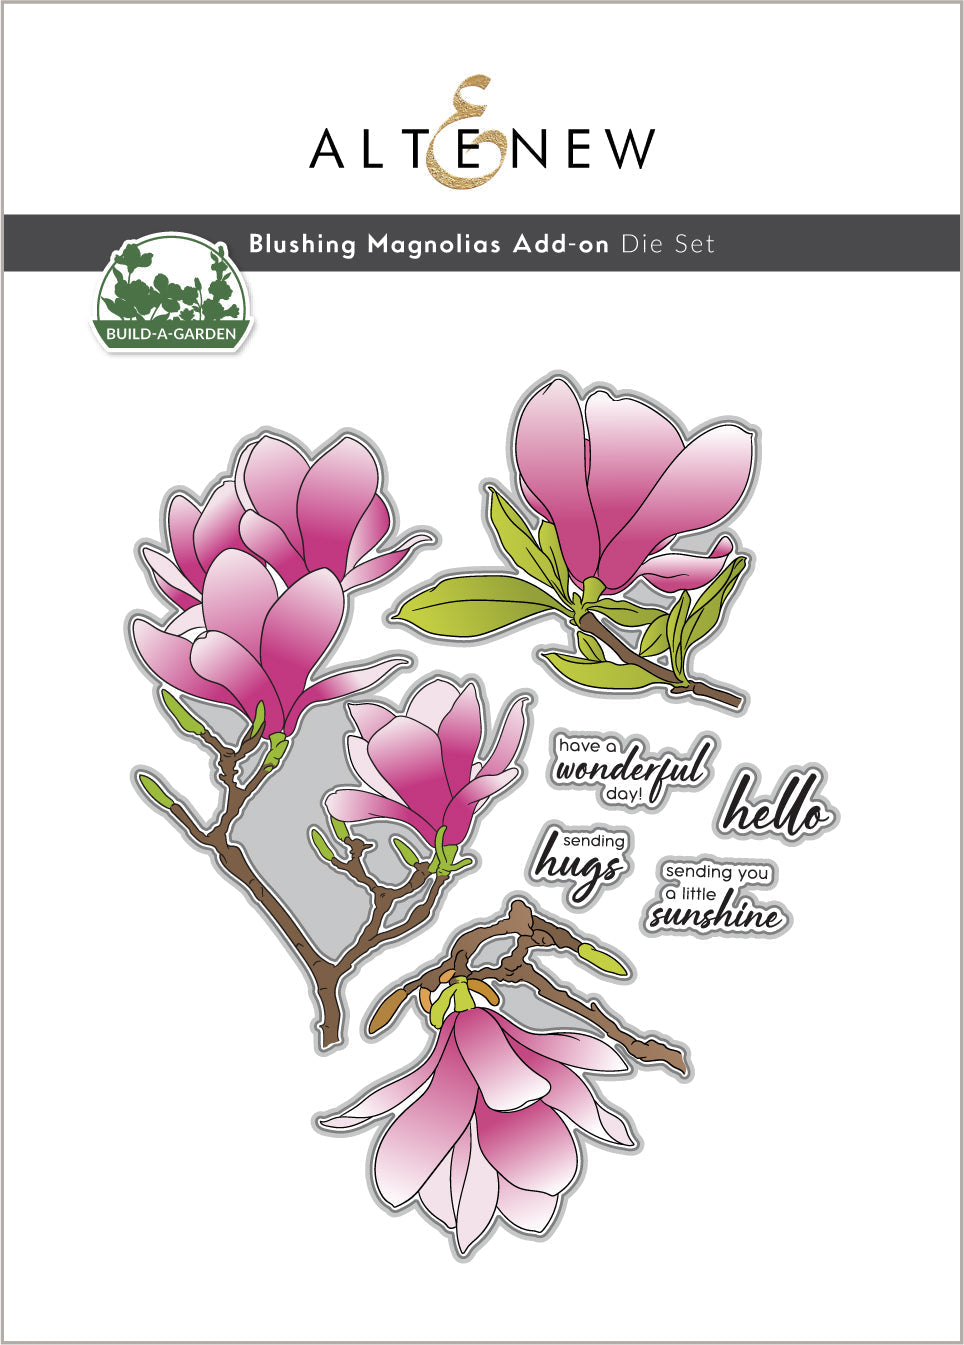 Dies Build-A-Garden: Blushing Magnolias Add-on Die Set